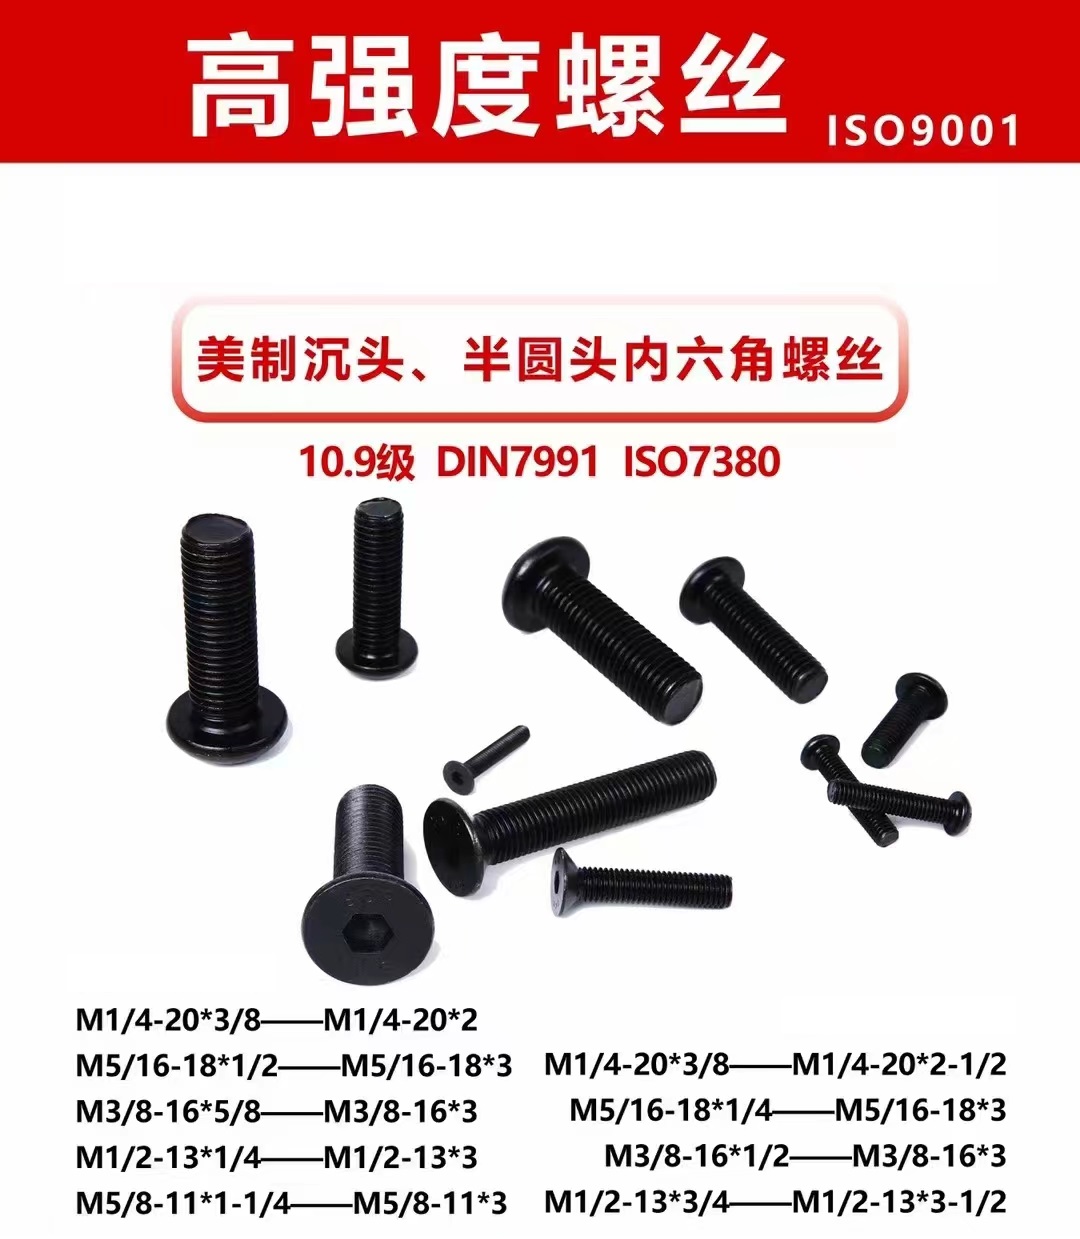 DIN7991 kuusiokantaiset upporuuvit valmistetaan TR-kiinnittimistä